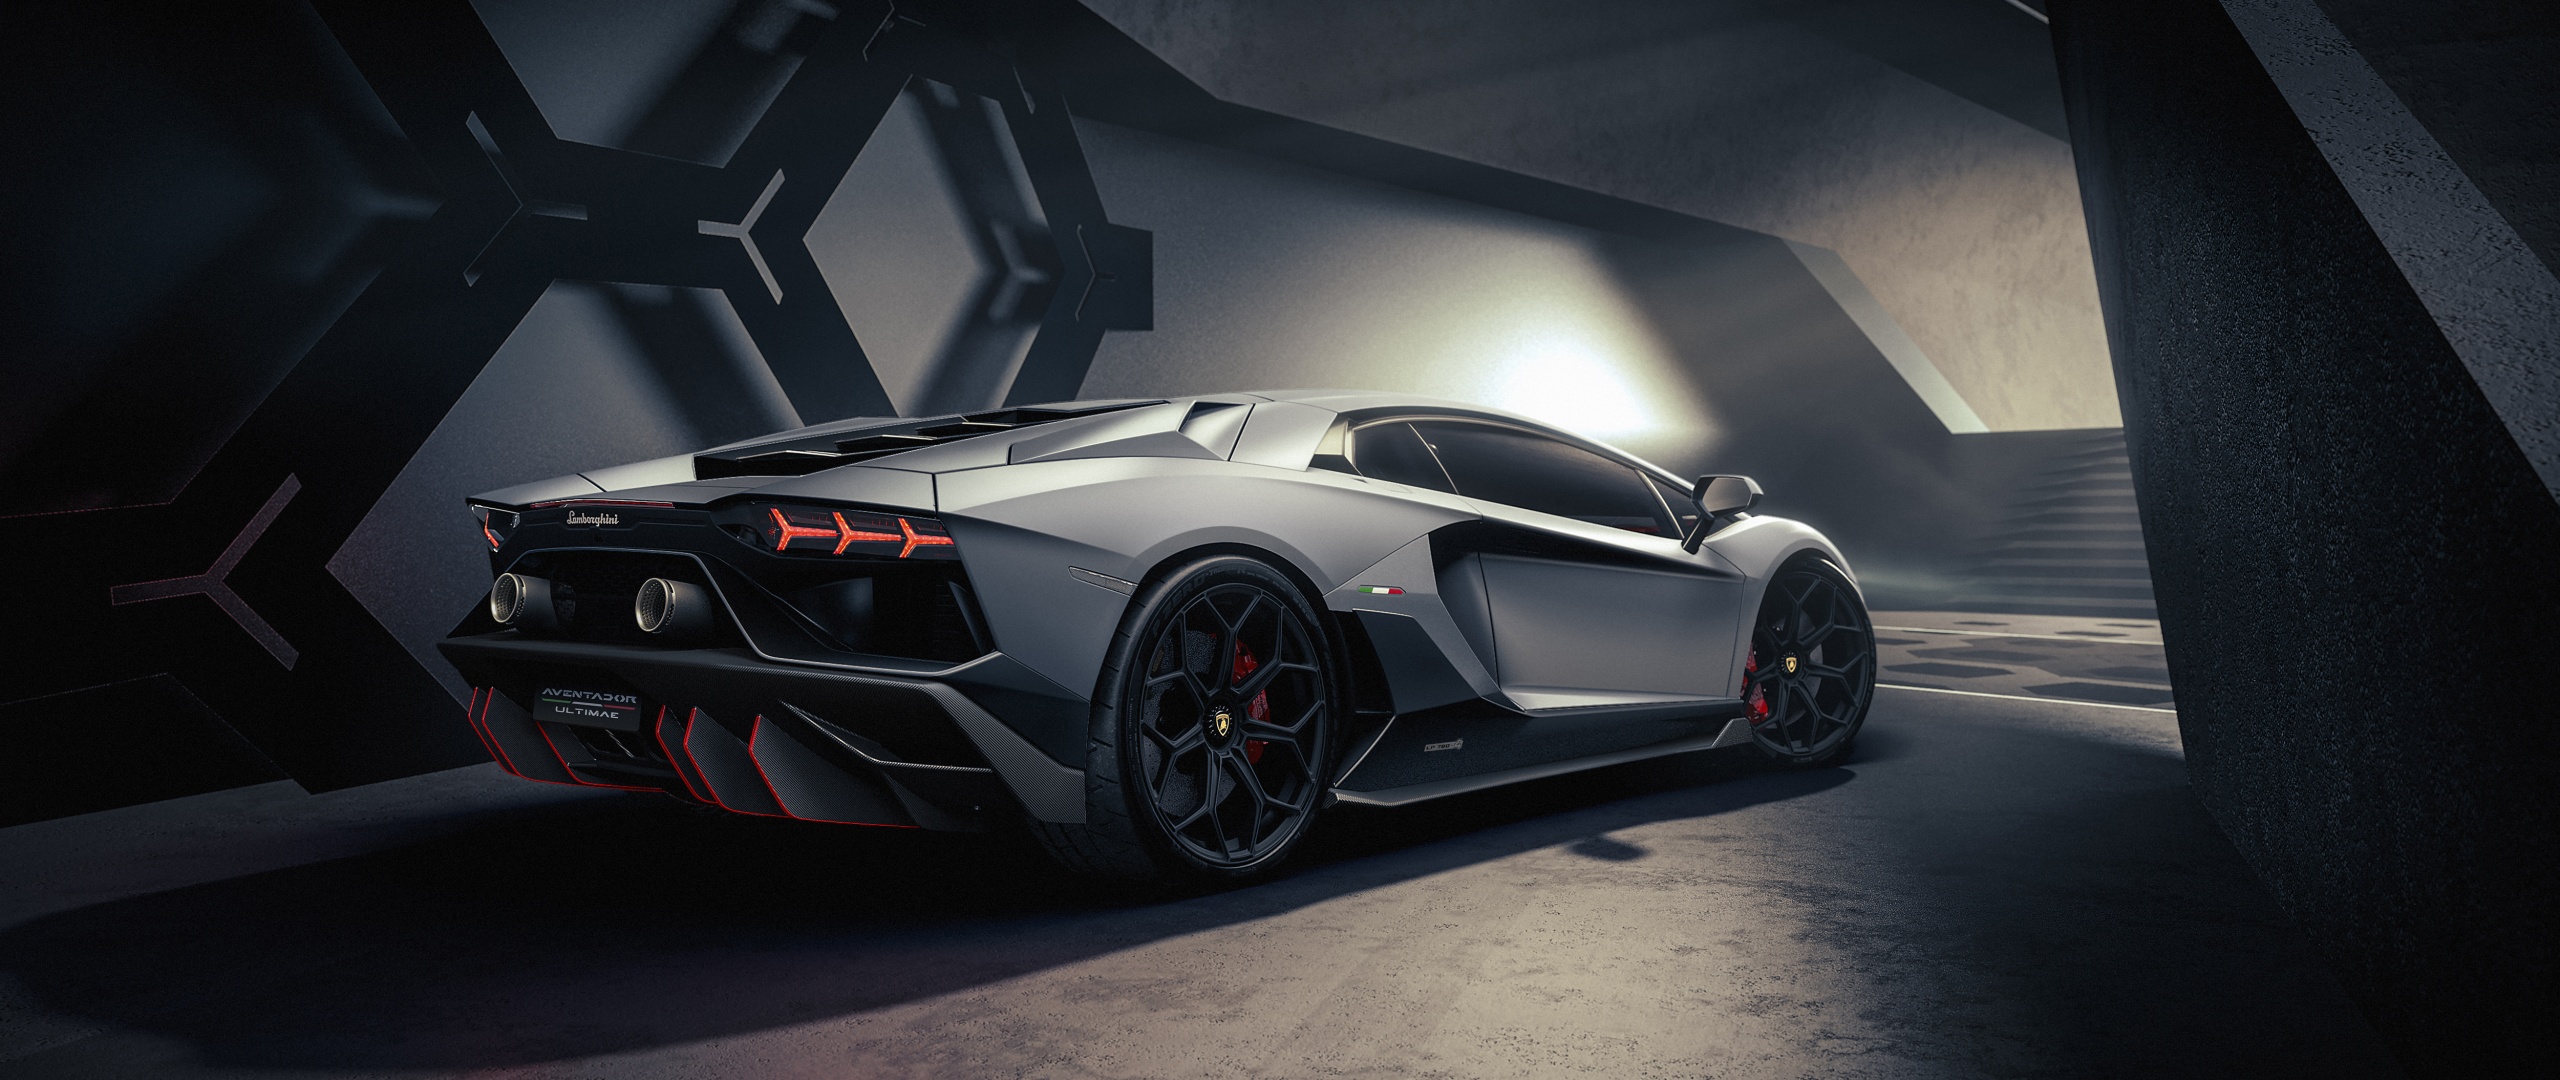 Khám phá chiếc siêu xe Lamborghini Aventador đầy mạnh mẽ với đường nét thiết kế nổi bật và cùng khả năng tăng tốc đến 100km/h chỉ trong 2,9 giây. Hình ảnh sẽ cho bạn cái nhìn chính xác về chiếc siêu xe này.